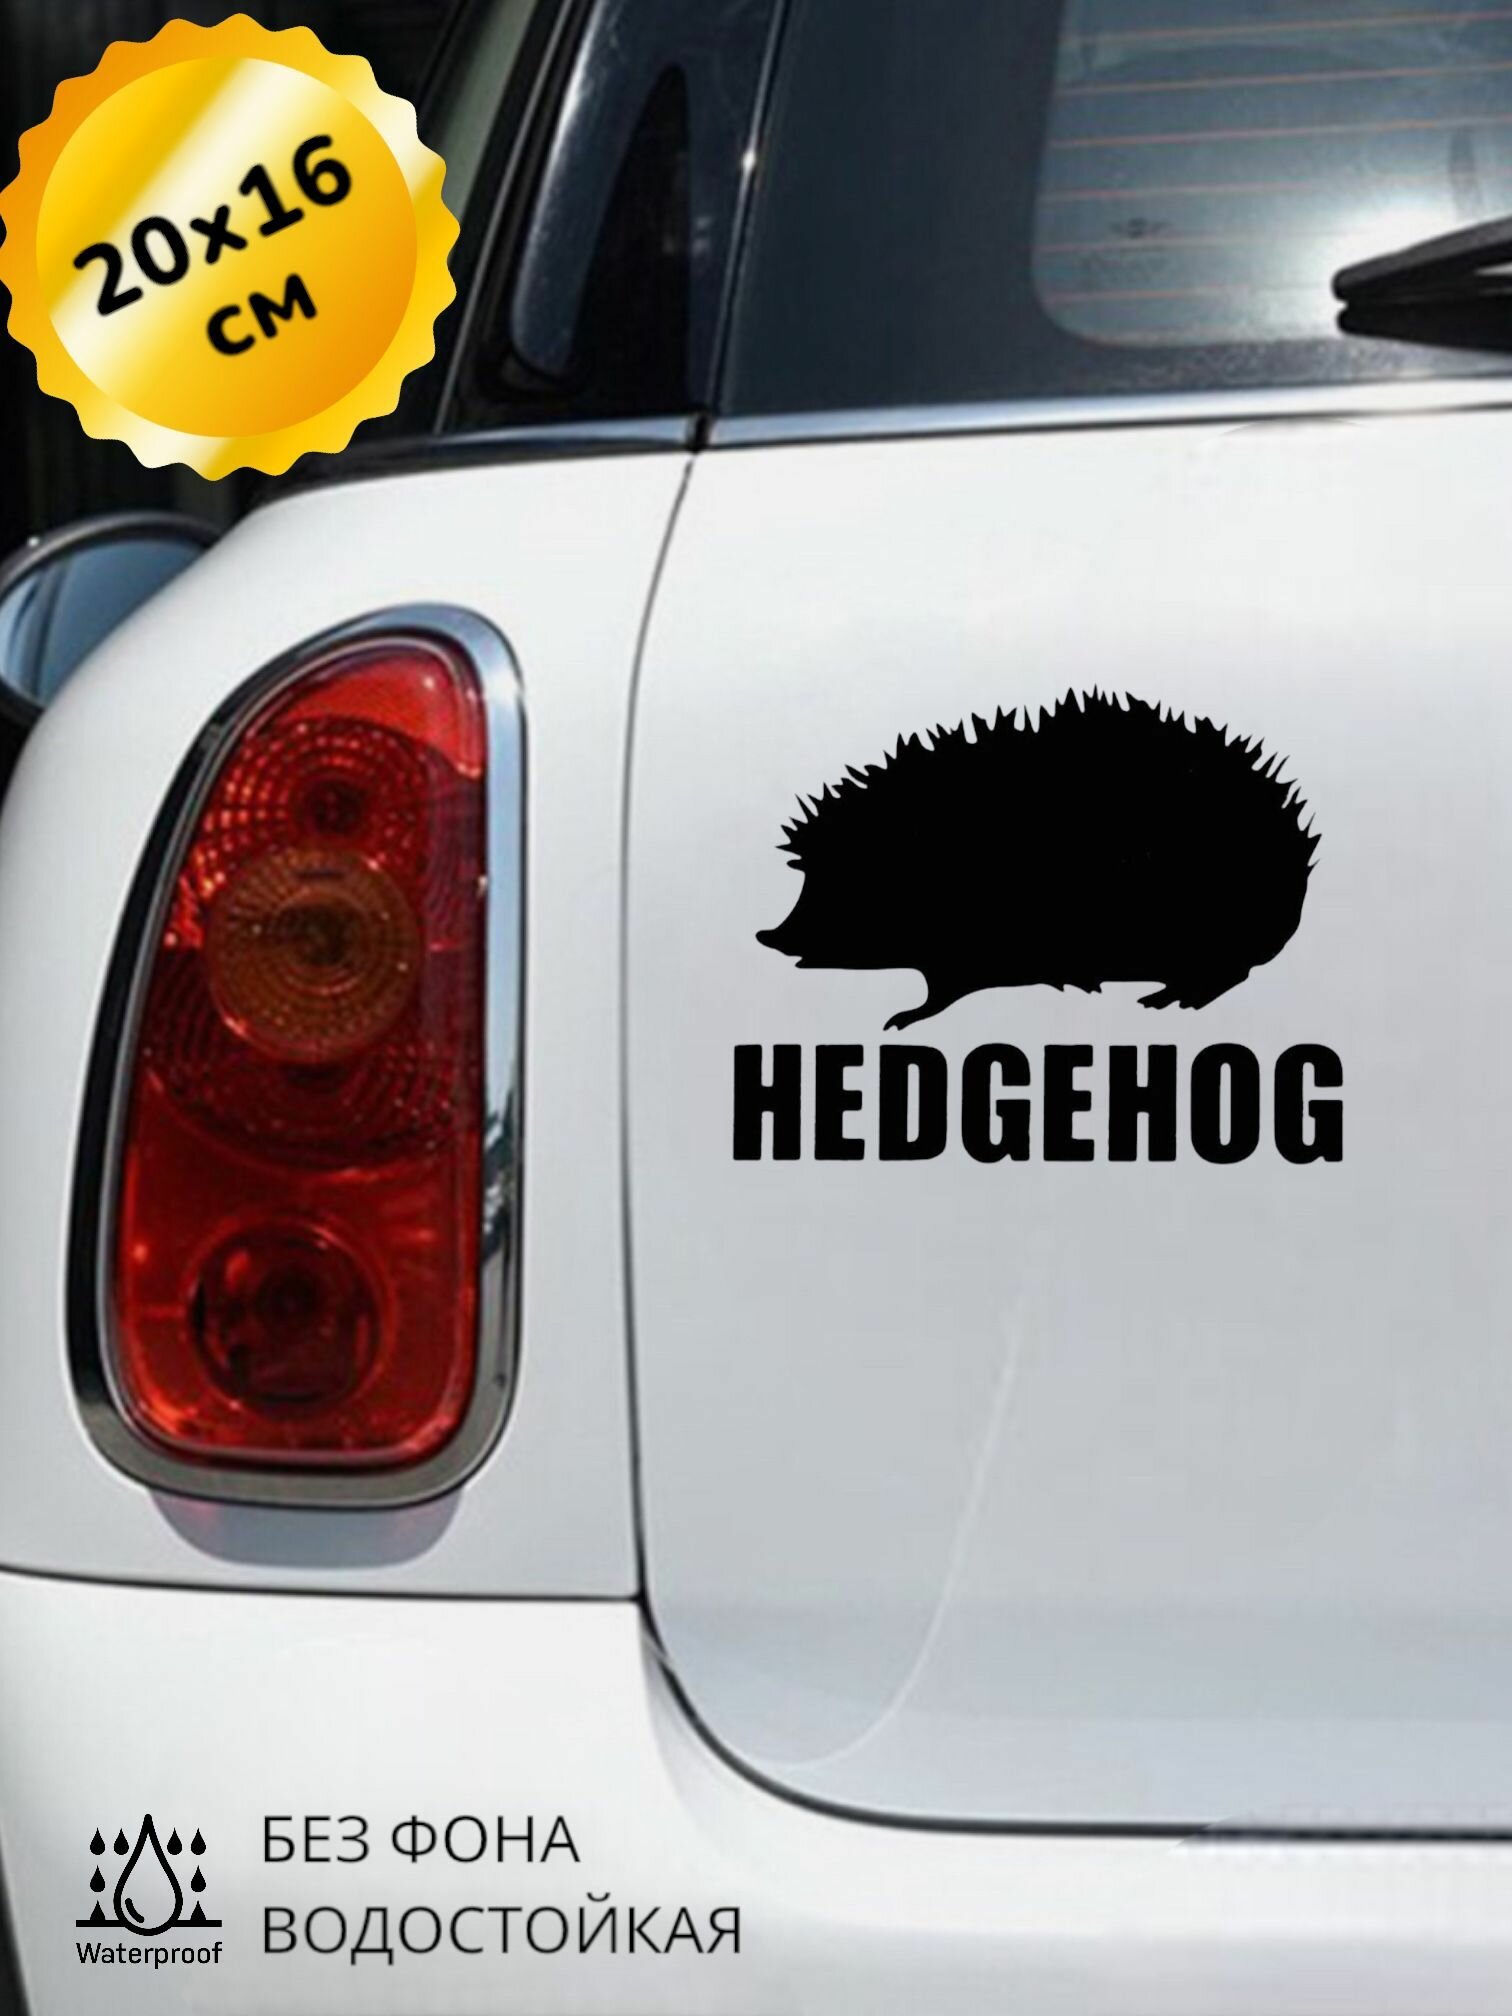 Наклейка на авто Hedgehog Еж Ежик 20Х16 см